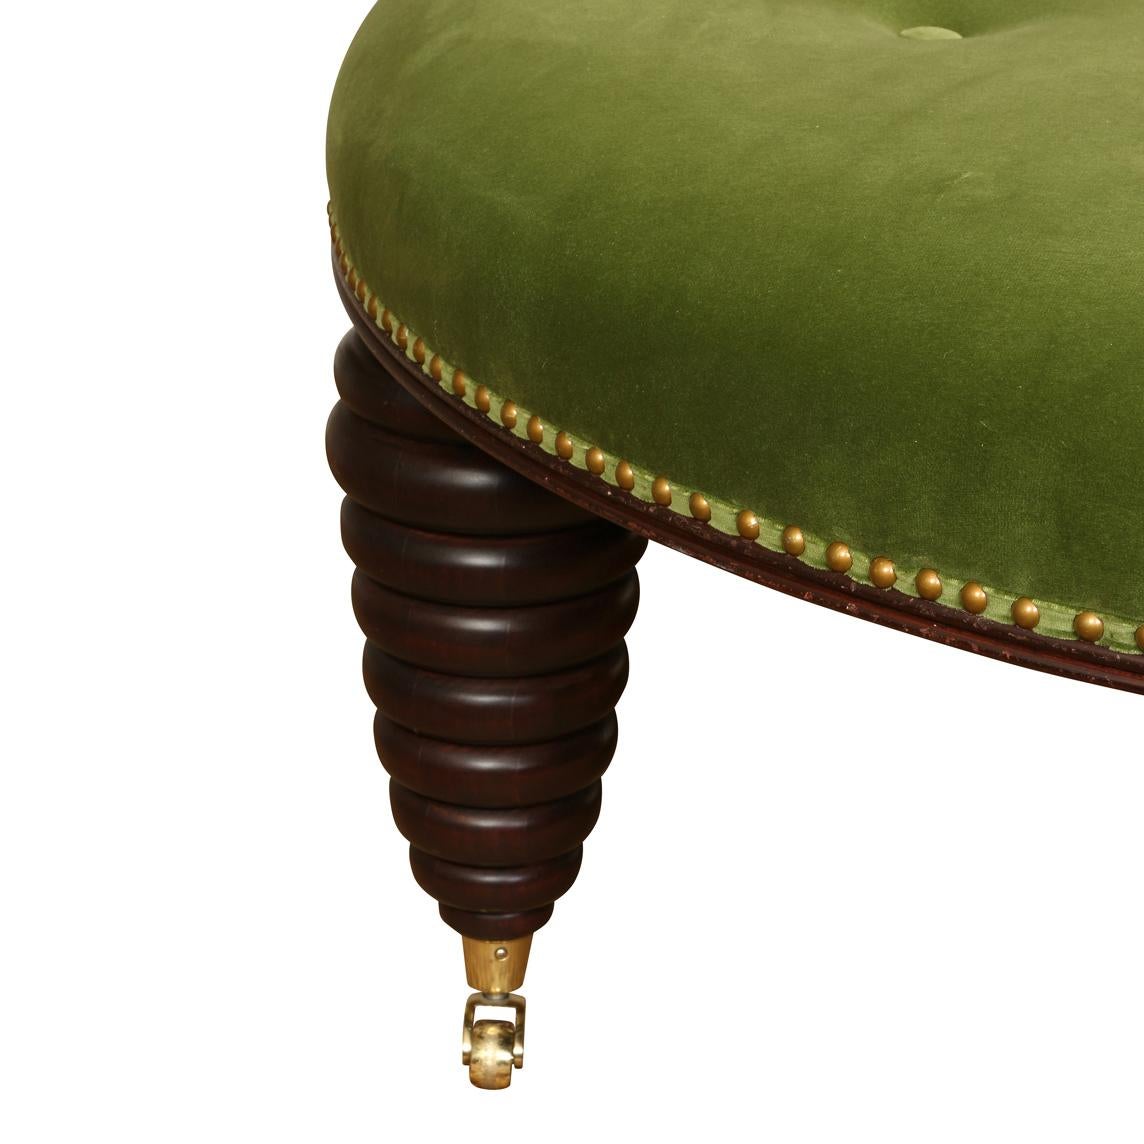 Ein großzügig bemessener, runder Ottoman mit Knopftuft und Nagelkopfverzierung, neu gepolstert in grünem Samt mit gestapelten, runden, modern geformten Beinen auf Rollen